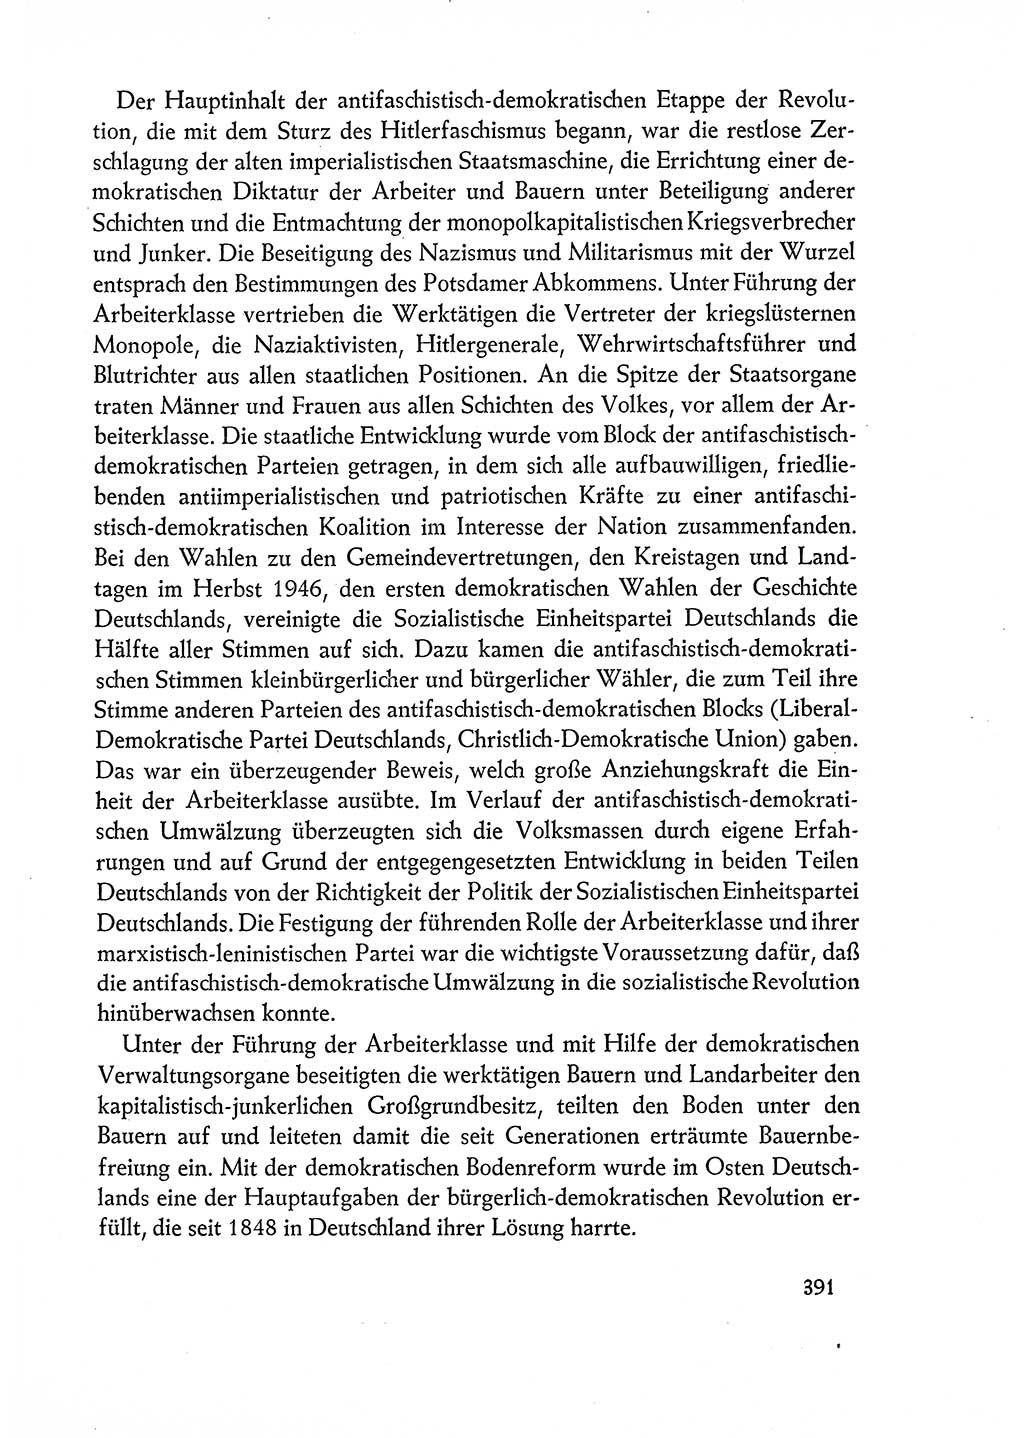 Dokumente der Sozialistischen Einheitspartei Deutschlands (SED) [Deutsche Demokratische Republik (DDR)] 1960-1961, Seite 391 (Dok. SED DDR 1960-1961, S. 391)